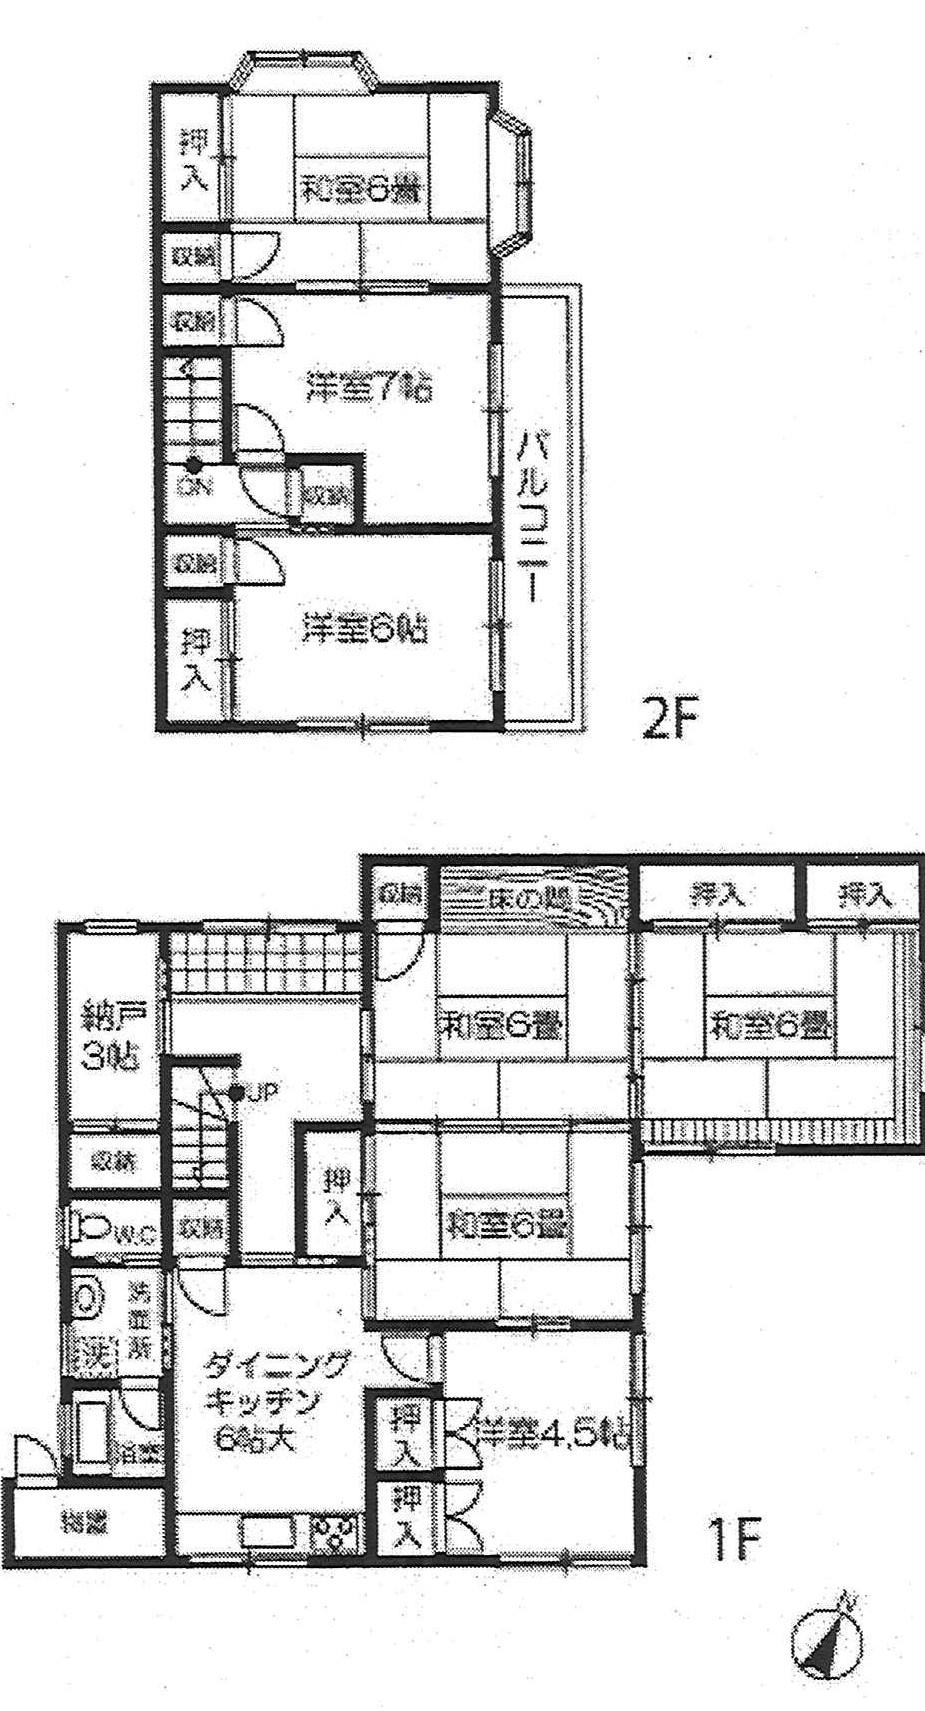 Floor plan. 13.8 million yen, 7DK, Land area 199.2 sq m , Building area 124.17 sq m